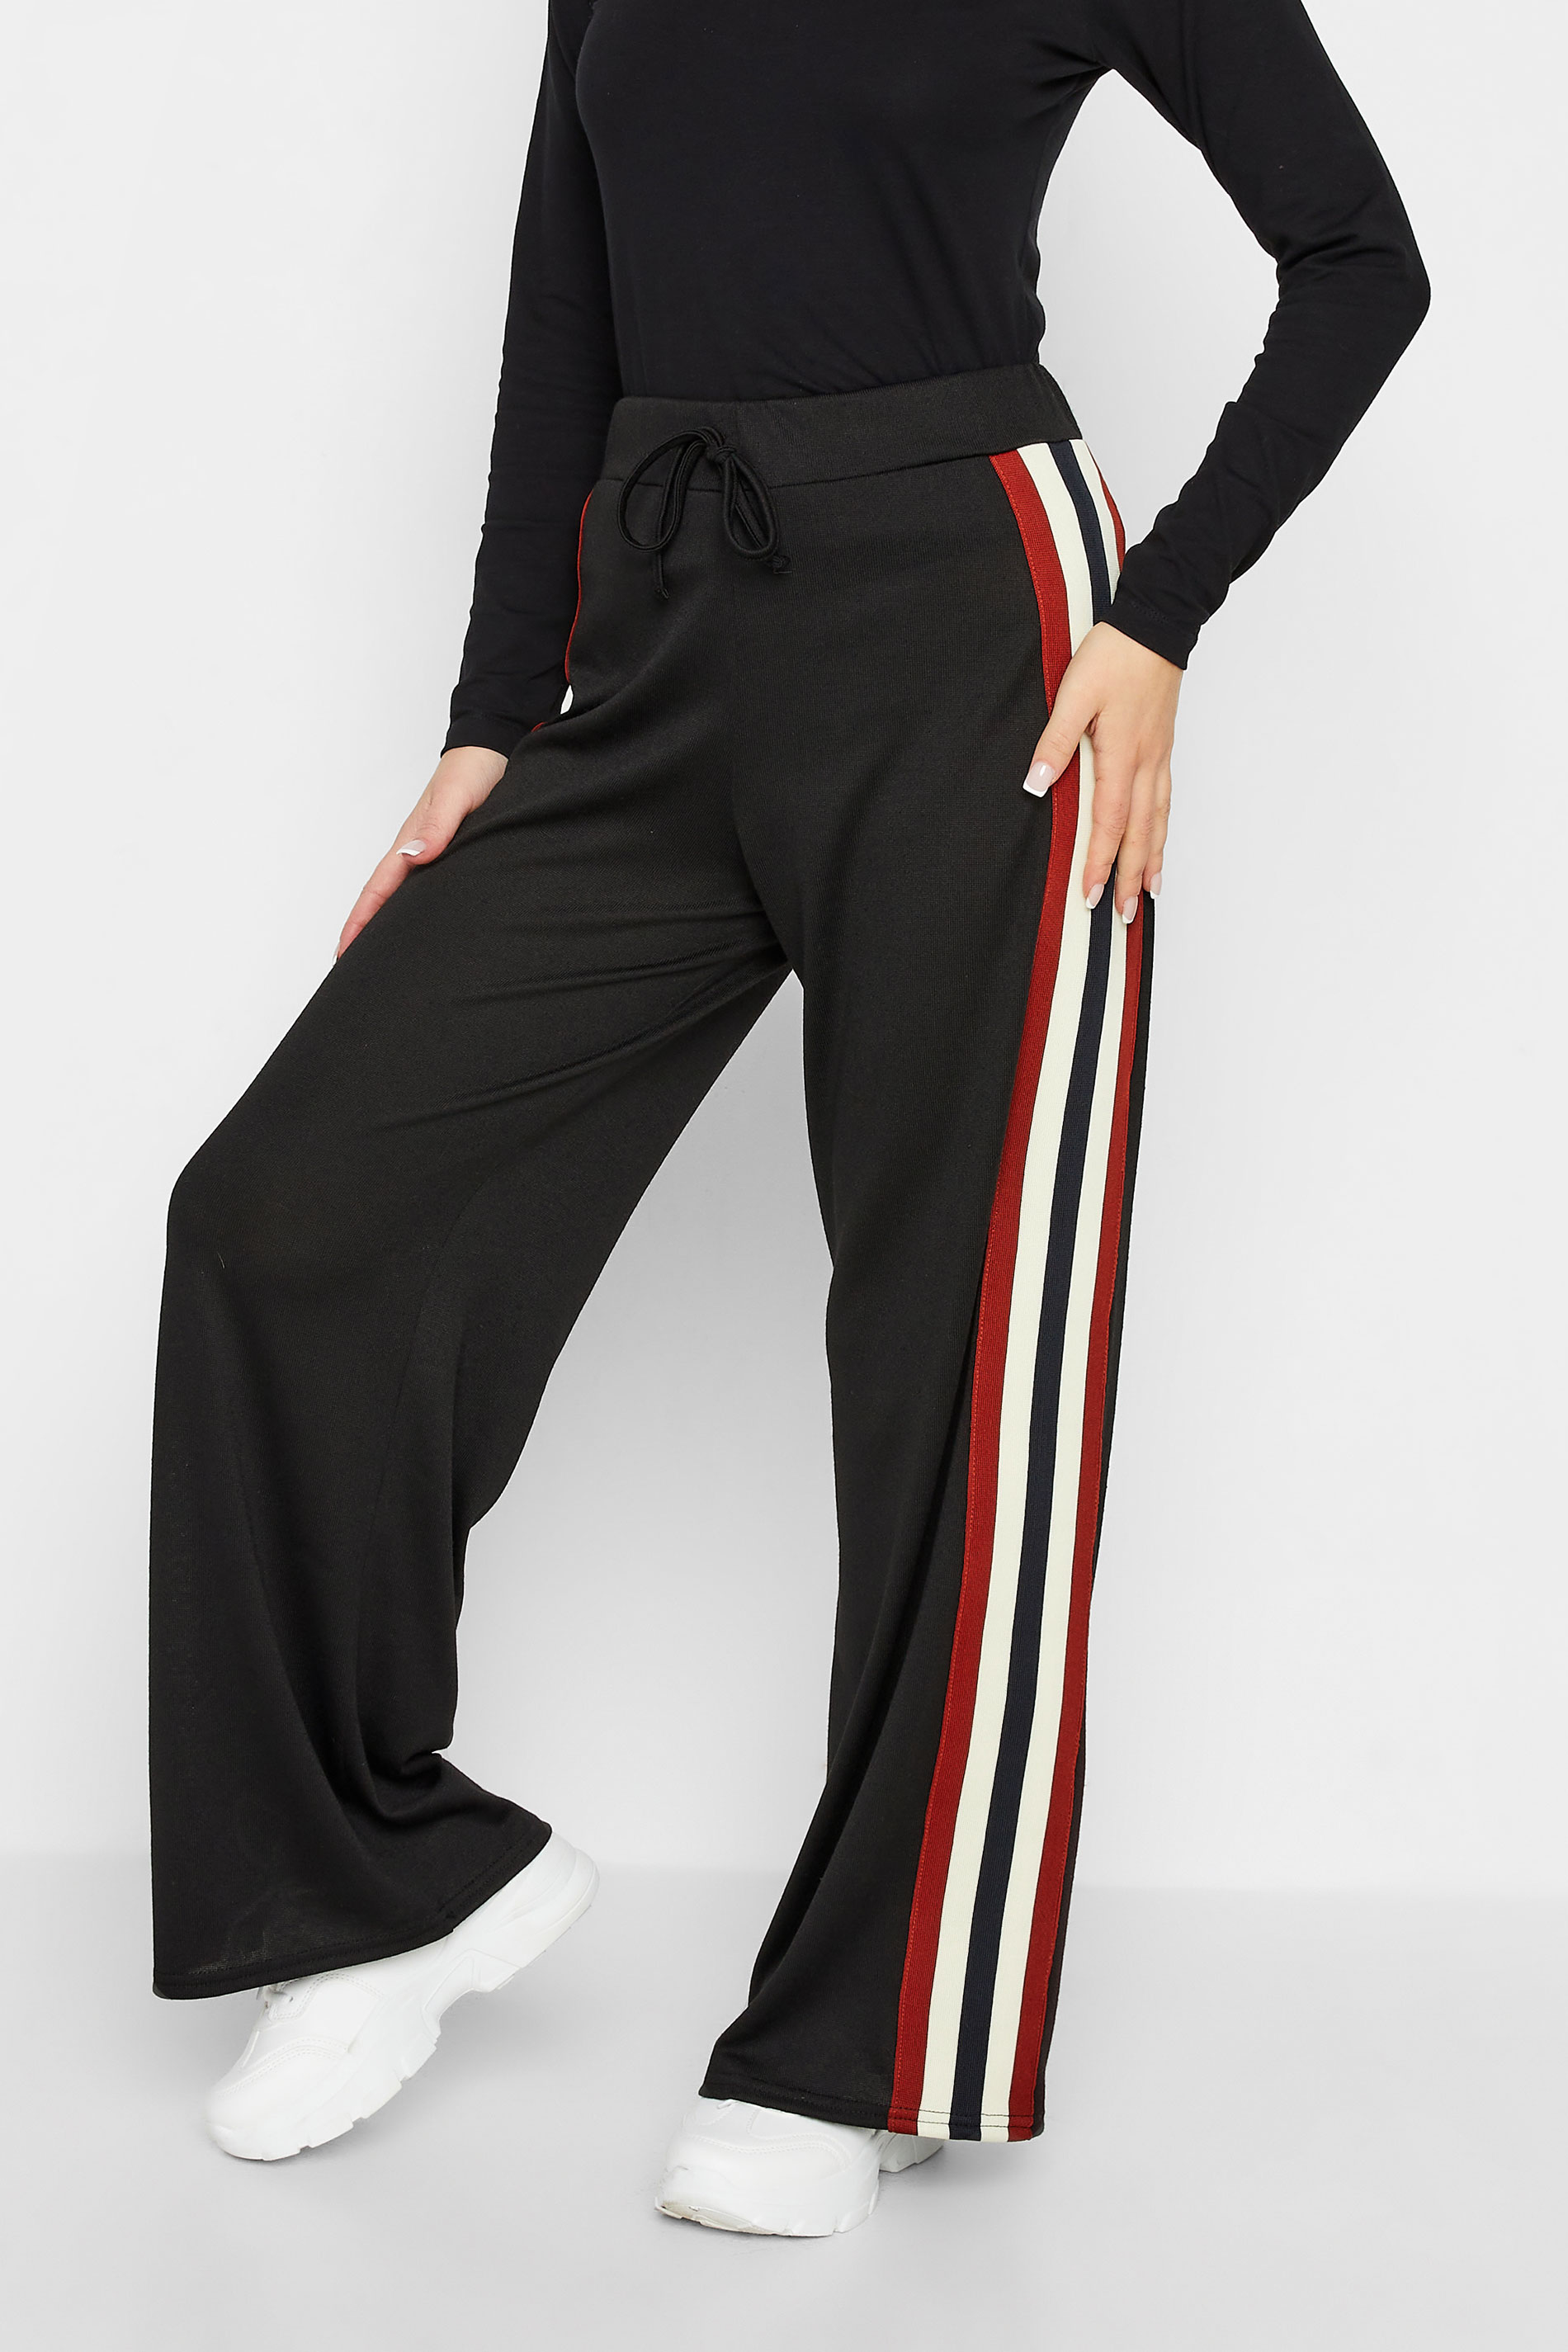 Petite Black Side Stripe Knitted Wide Leg Trousers | PixieGirl 1